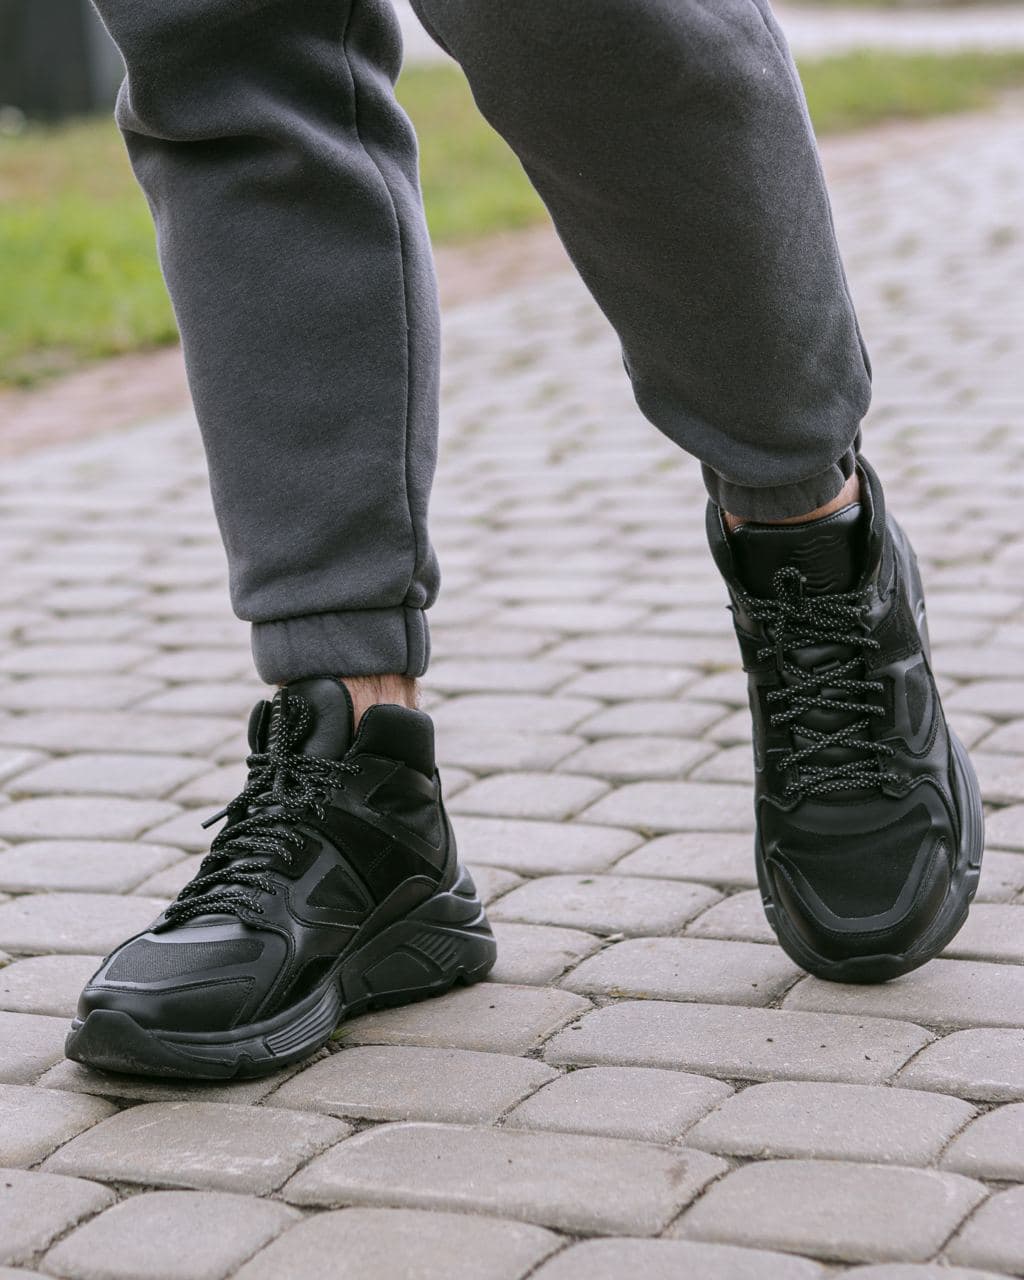 Мужские зимние кроссовки кожаные (ботинки) черные Protect - Фото 2